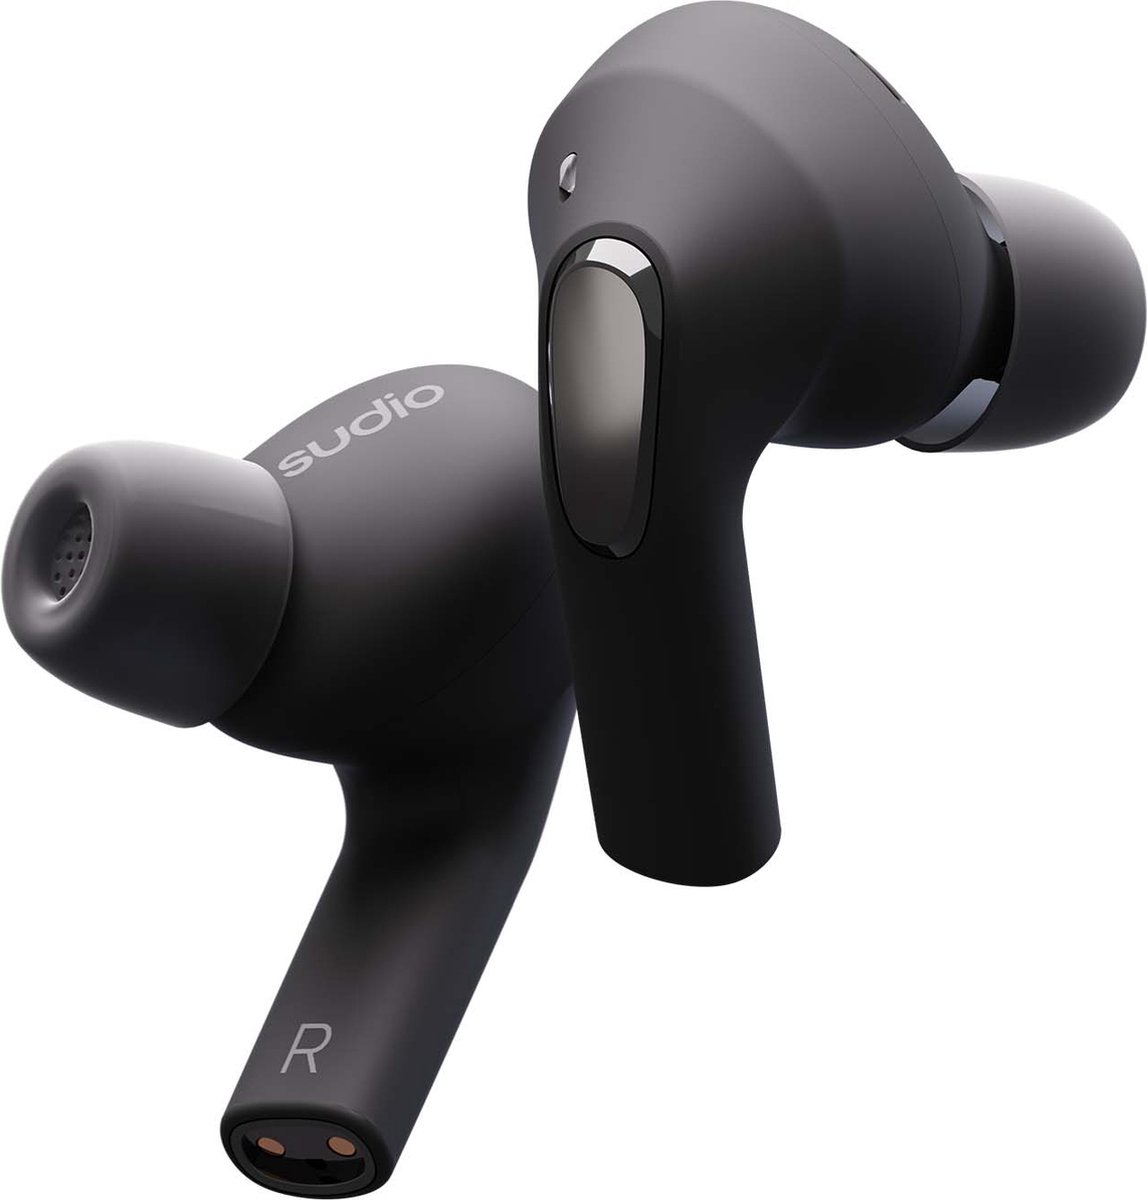 Sudio E2 in-ear true wireless earphones - draadloze oordopjes - met active noice cancellation (ANC) - zwart